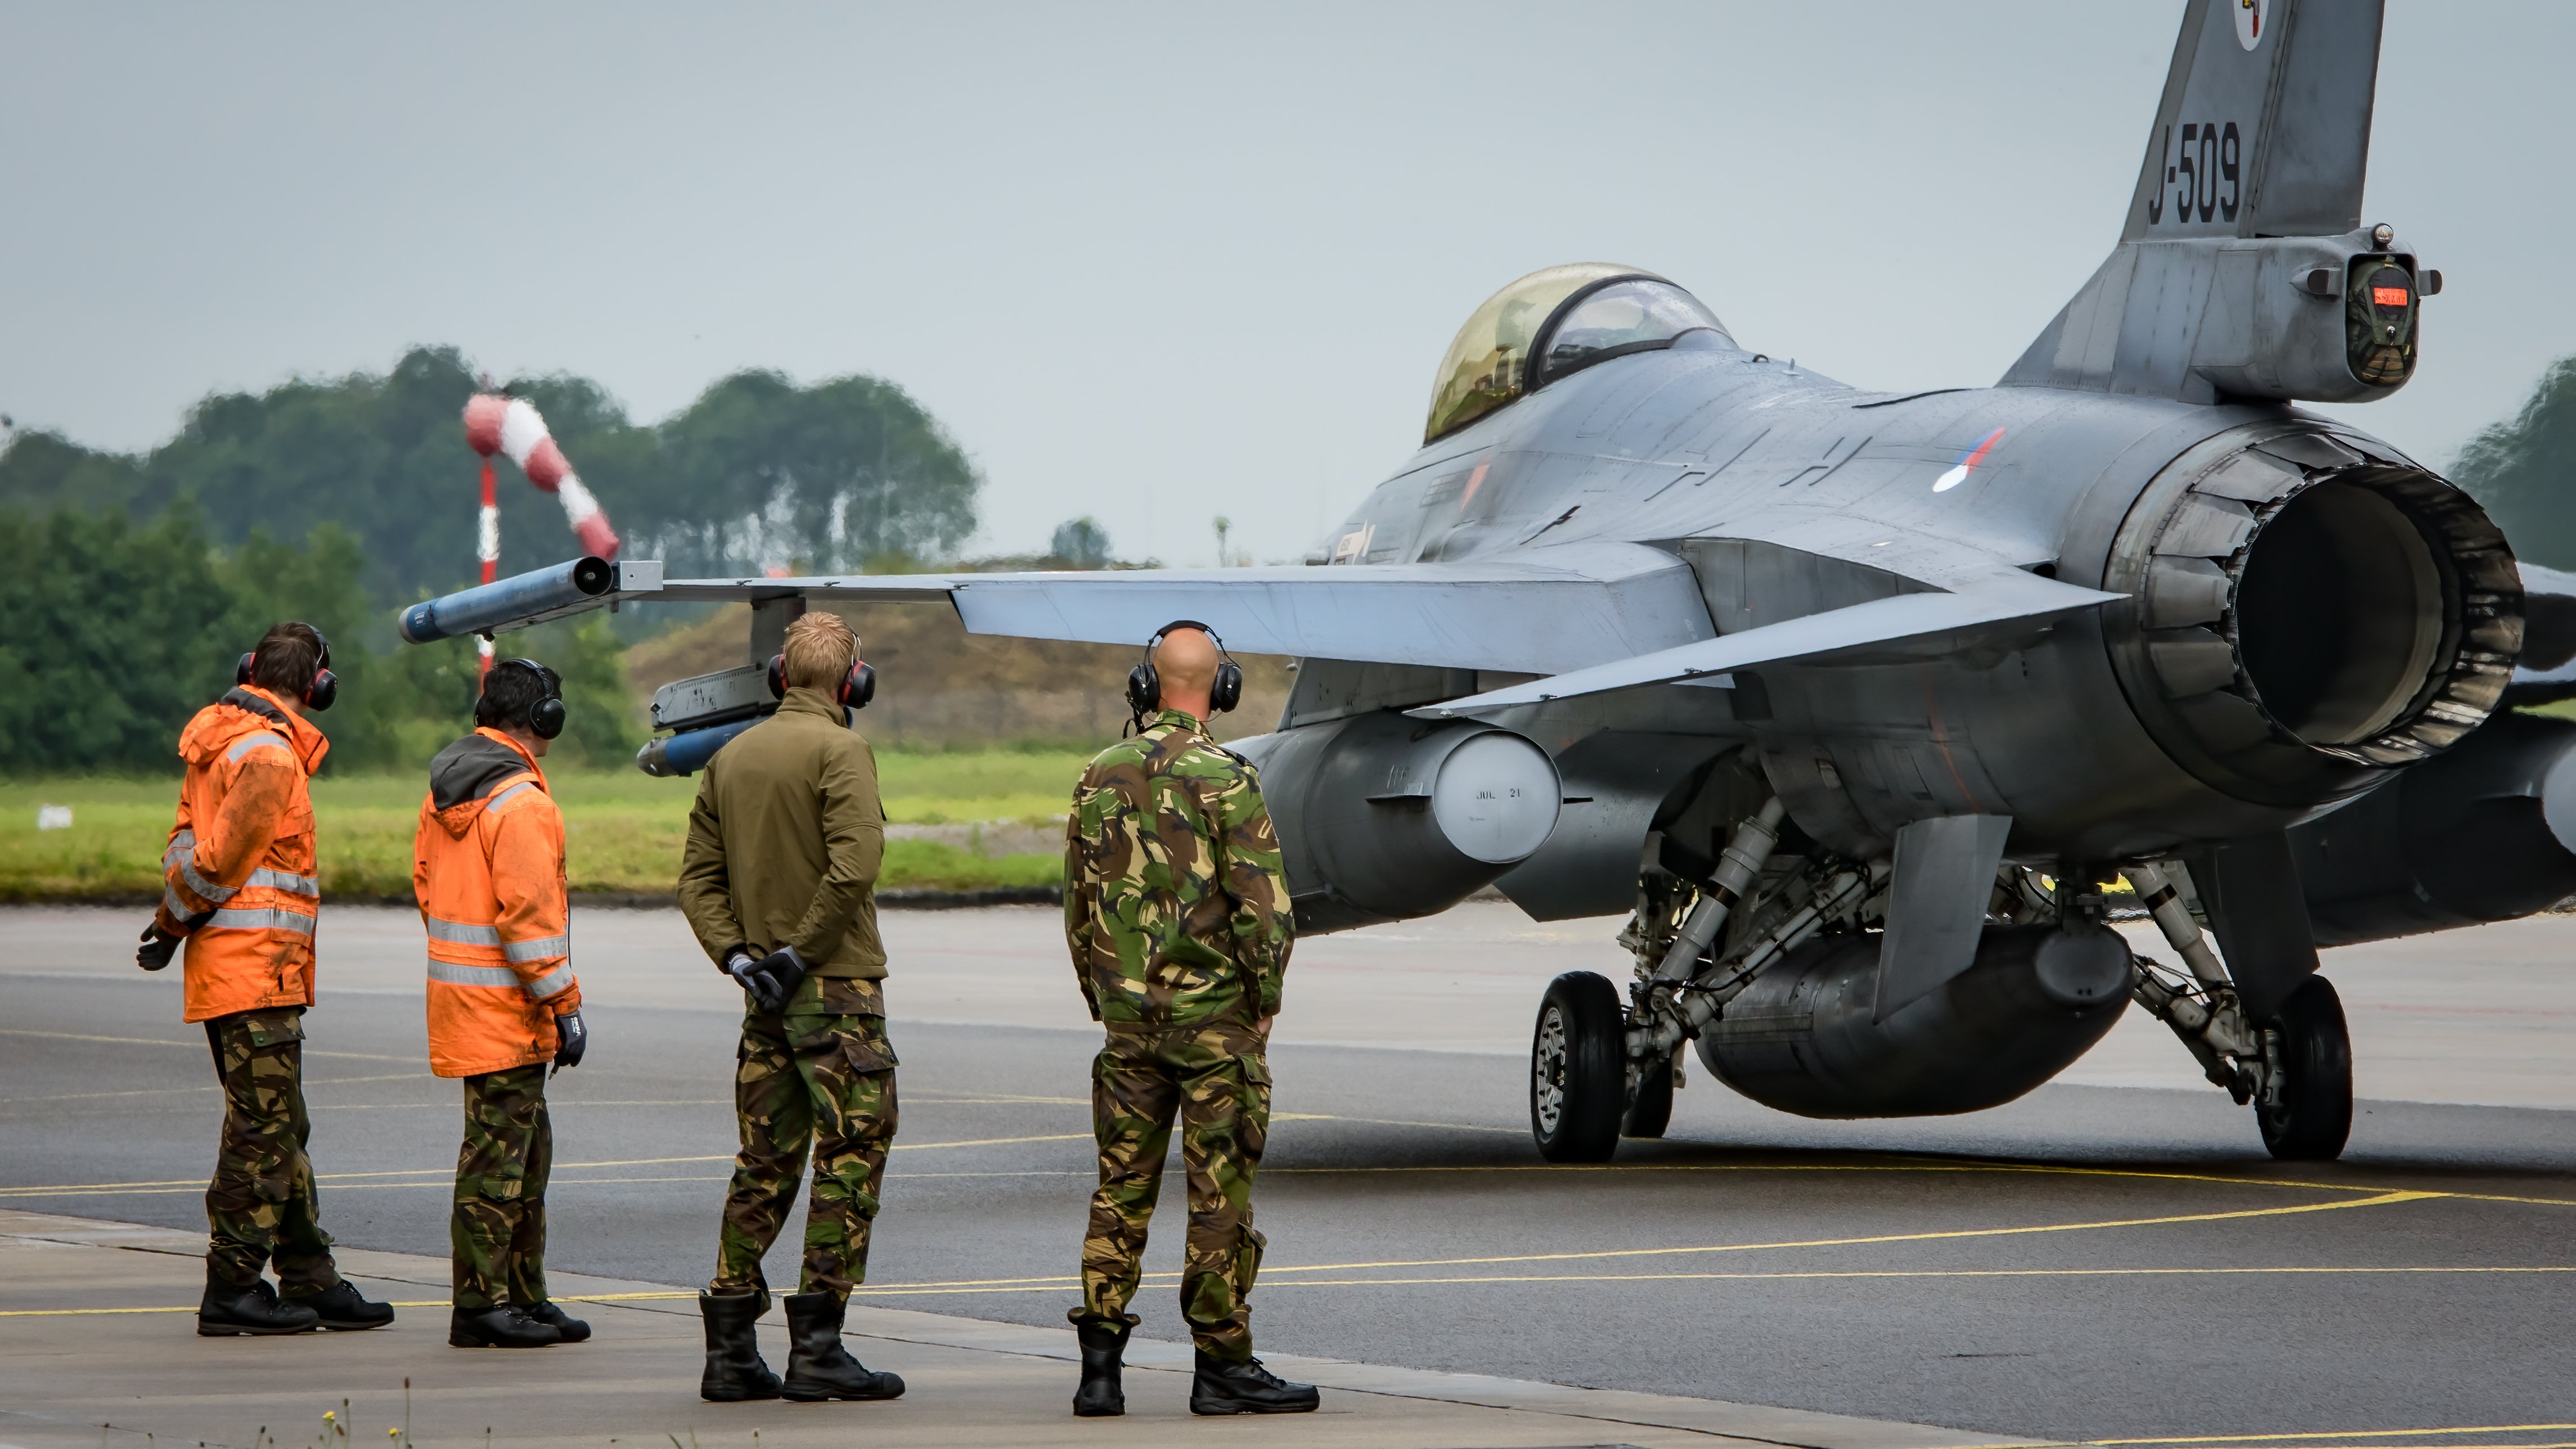 322 Sqn RNLAF F-16 at Leeuwarden on 05-07-21 [Danny Reijnen]